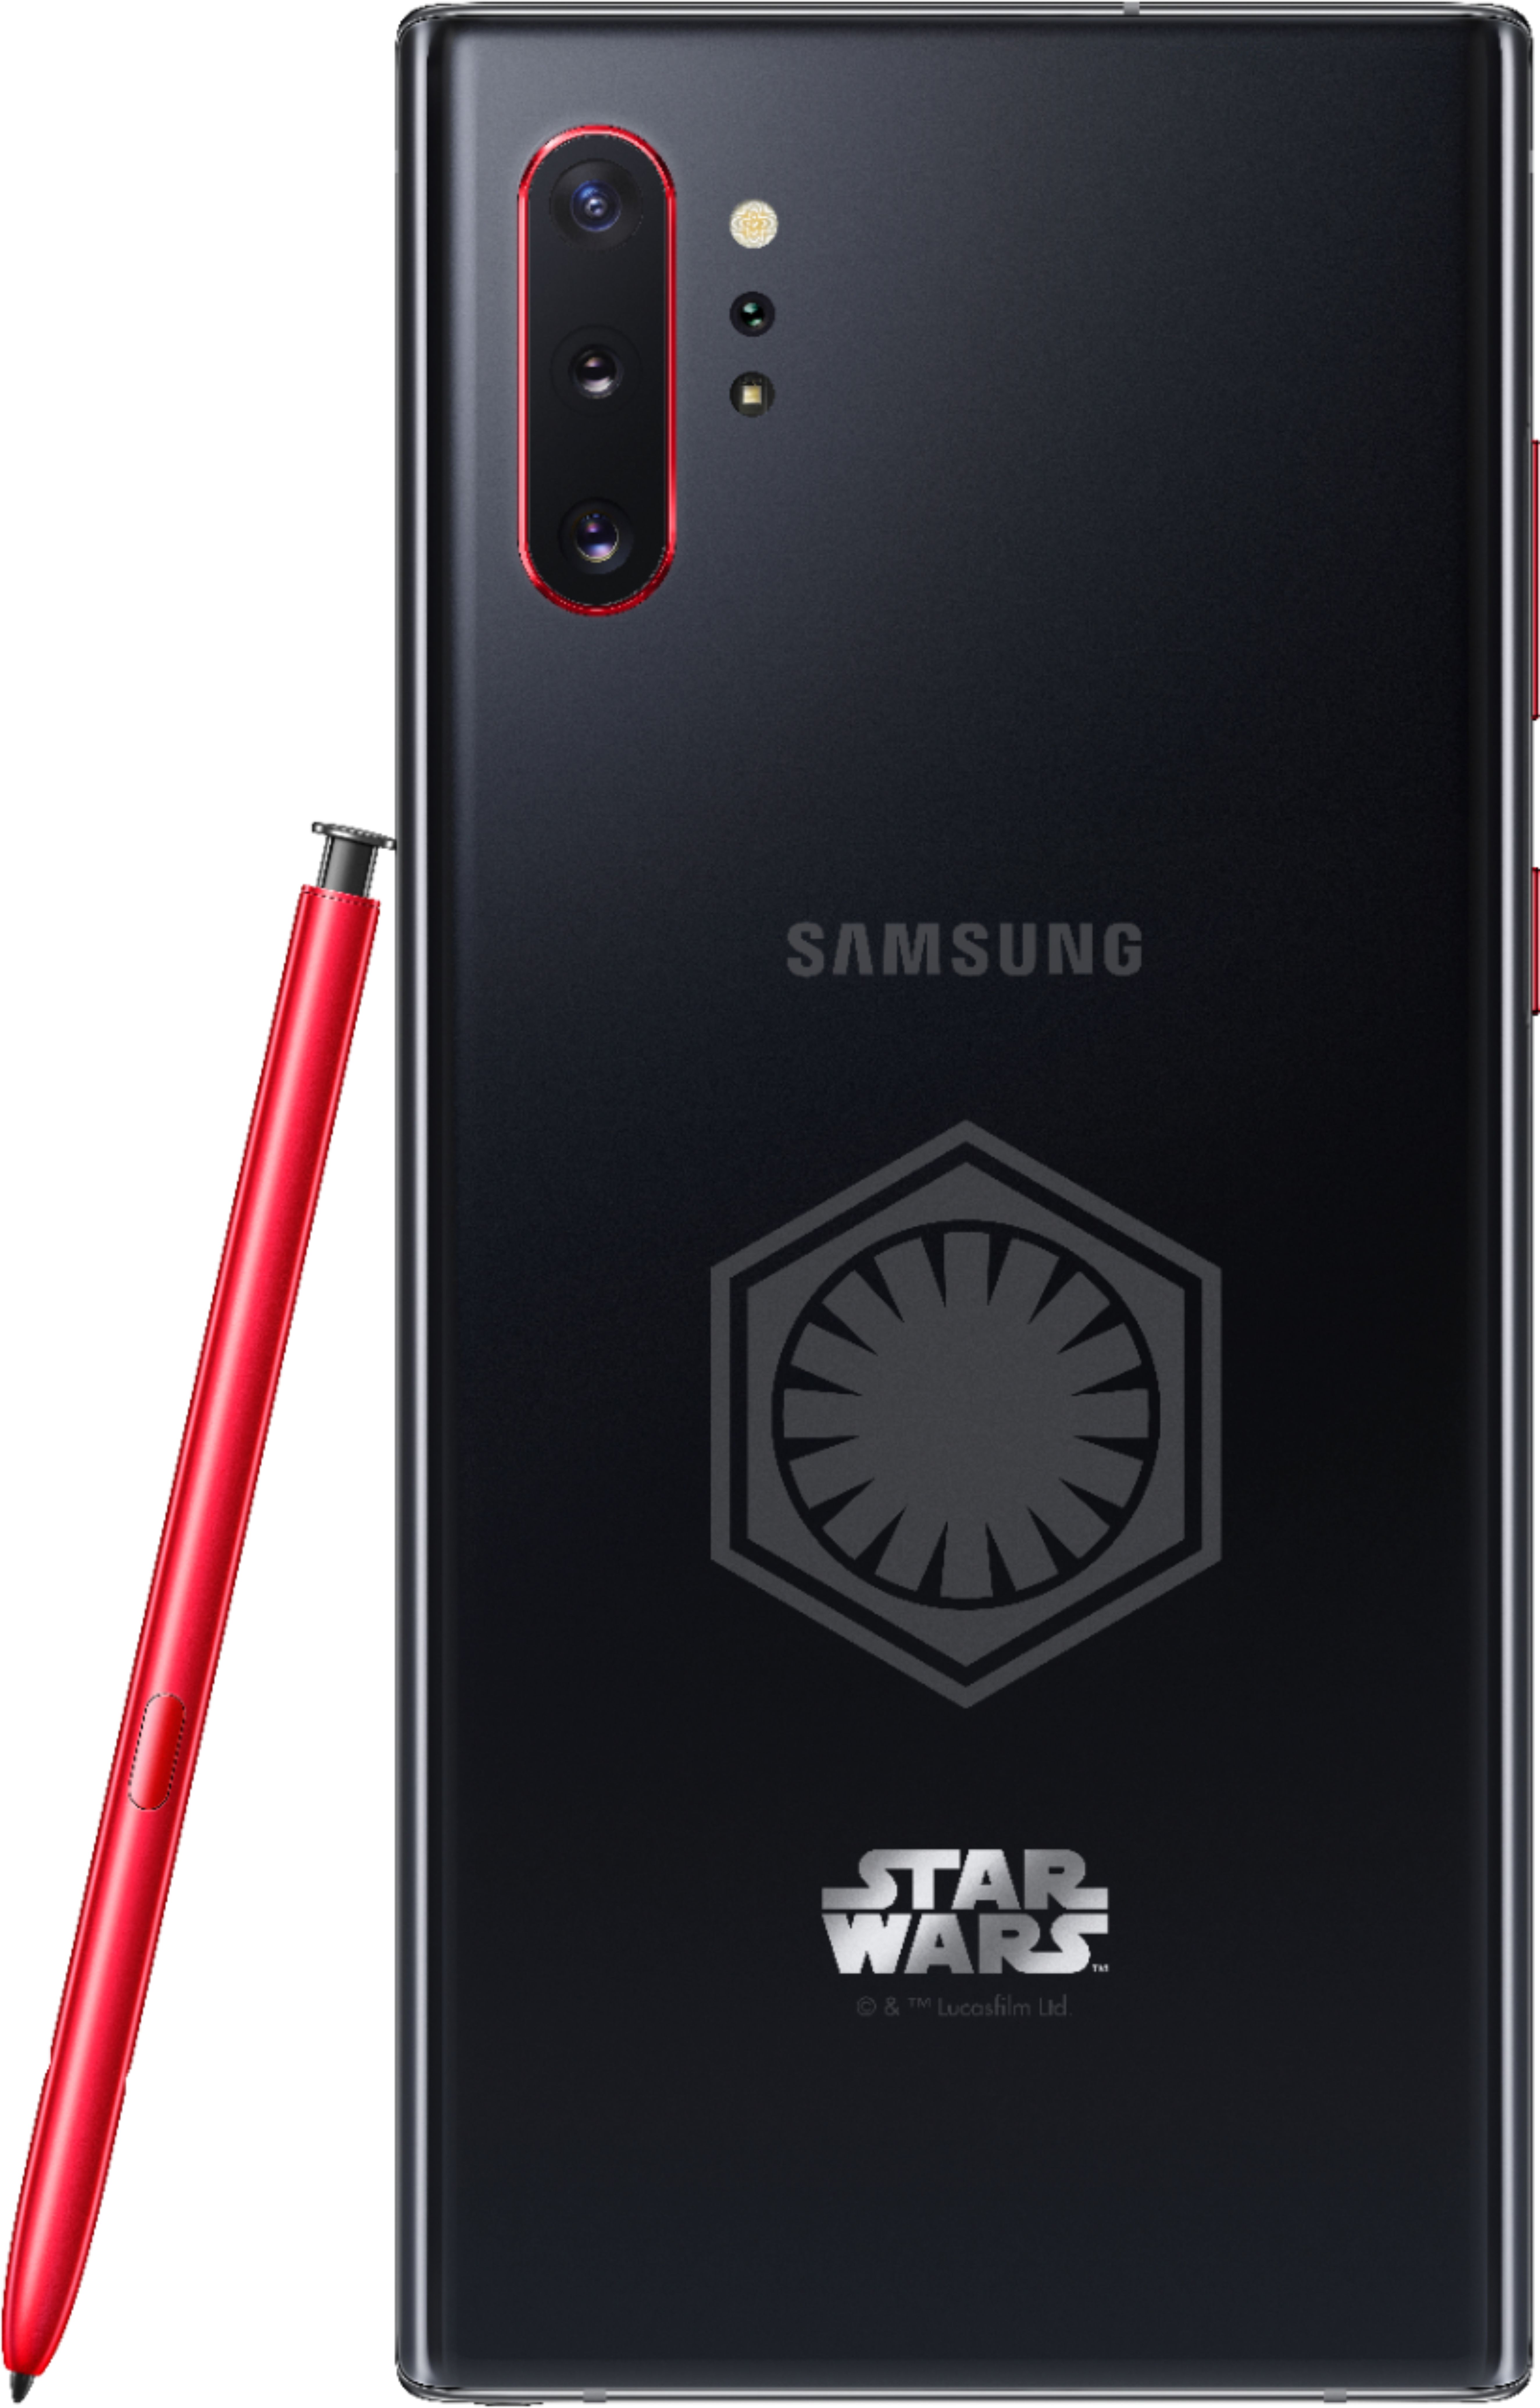 エントリー最大P14倍以上 Galaxy Note10+ Star Wars Special Edition ...